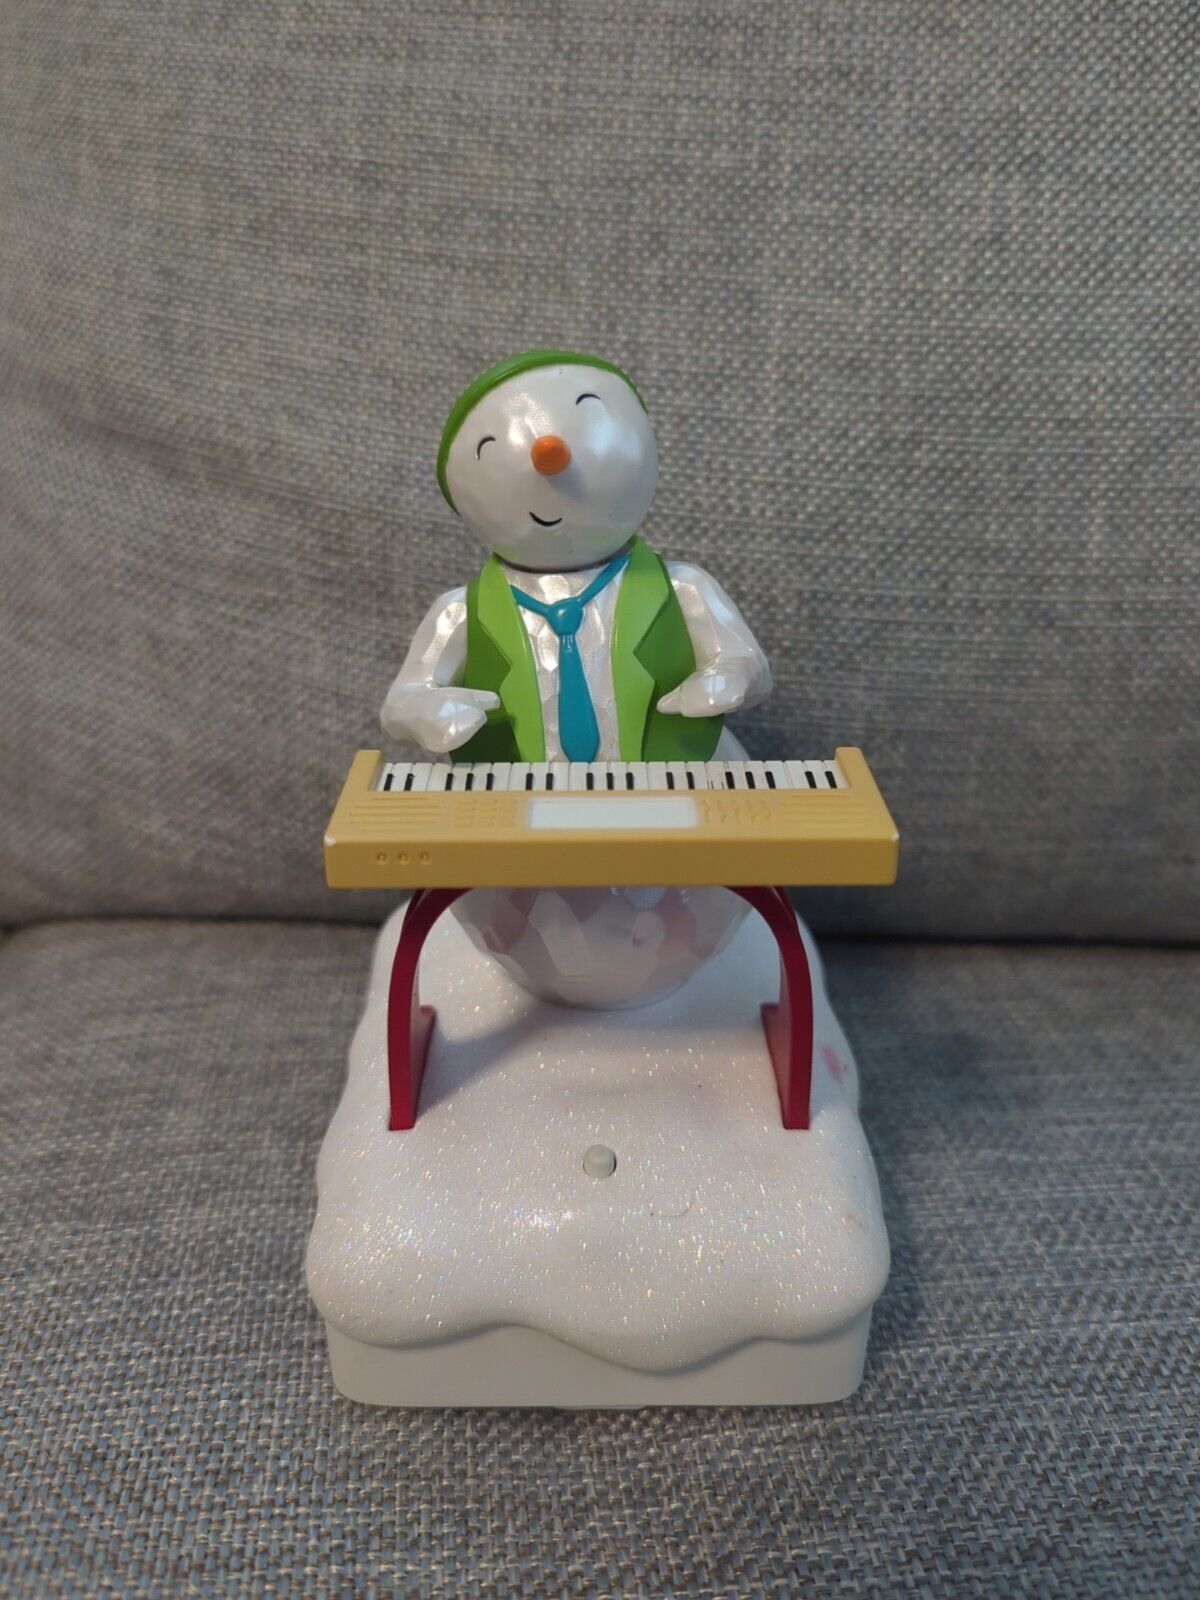 Vintage Hallmark Keyboard Ken Wireless Snowman Band 2010 Interactive Music WORKS